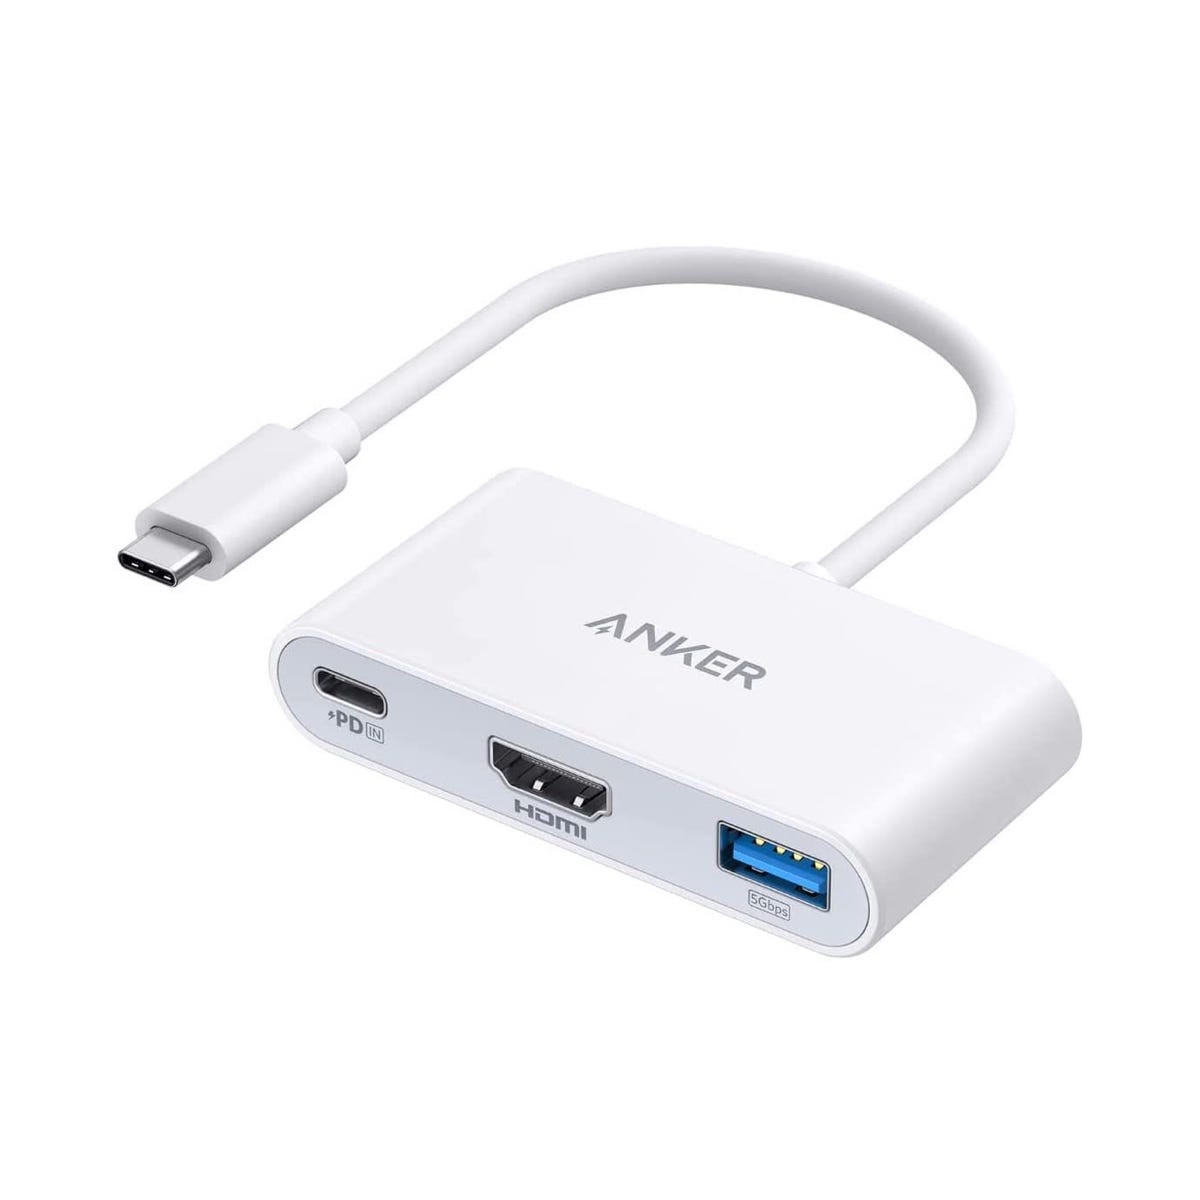 Anker、3-in-1 USB-Cハブの新色ホワイトを発売